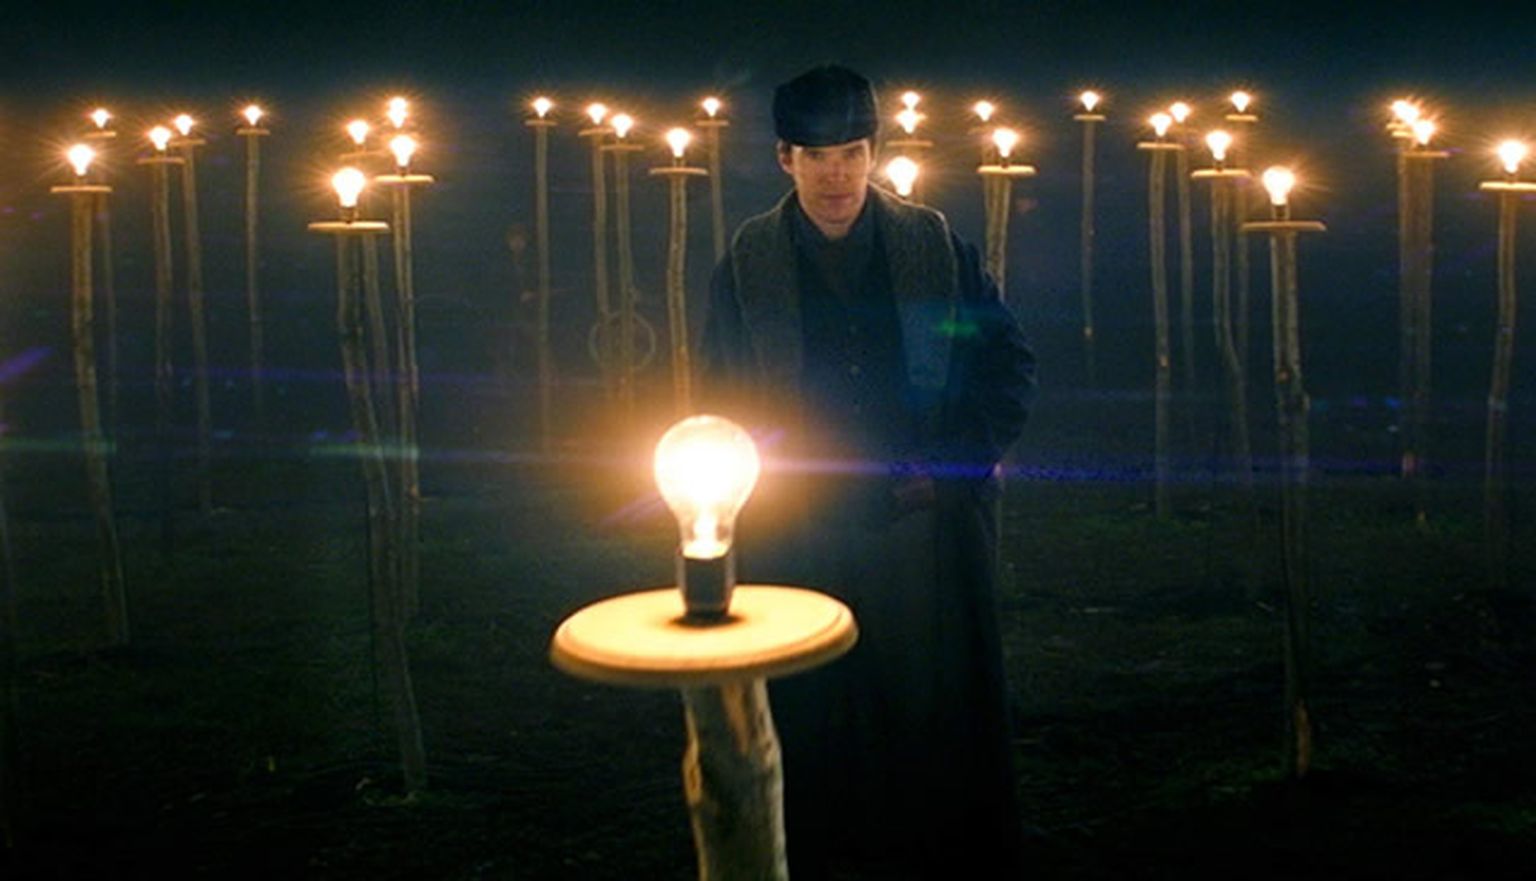 Эдисон (Бенедикт Камбербэтч) и его лампочки: великий человек велик во всем, в пиаре в том числе.